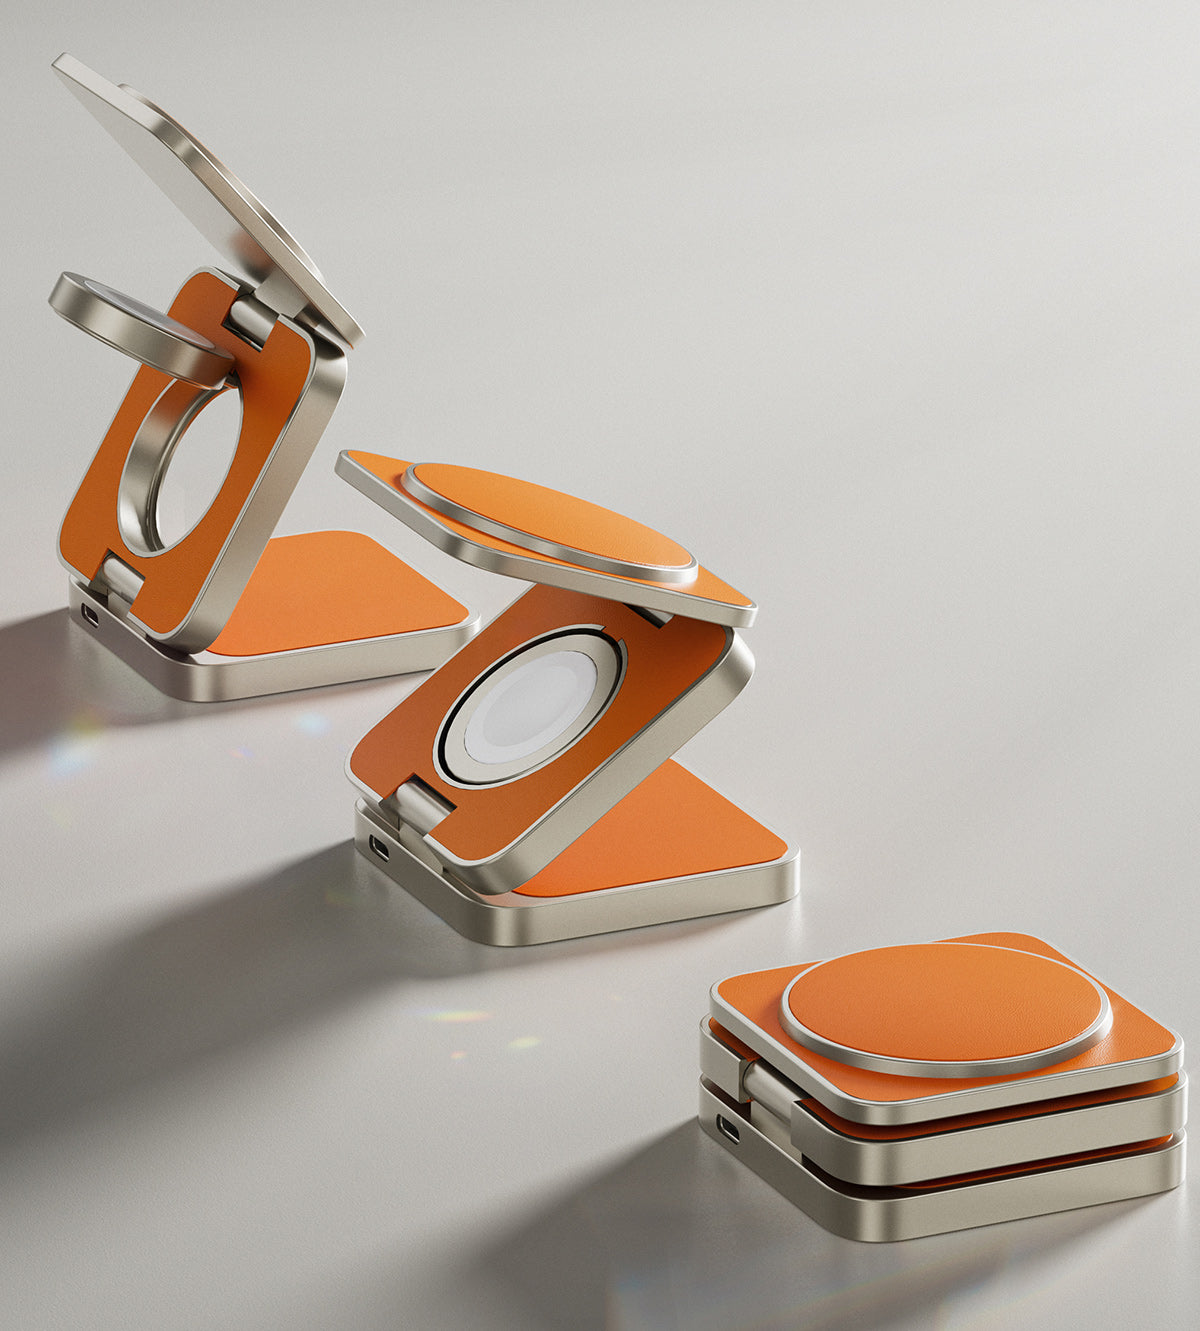 KUXIU X40 Pro 三合一可折疊磁性無線充電器和支架套件 - 橙色皮革